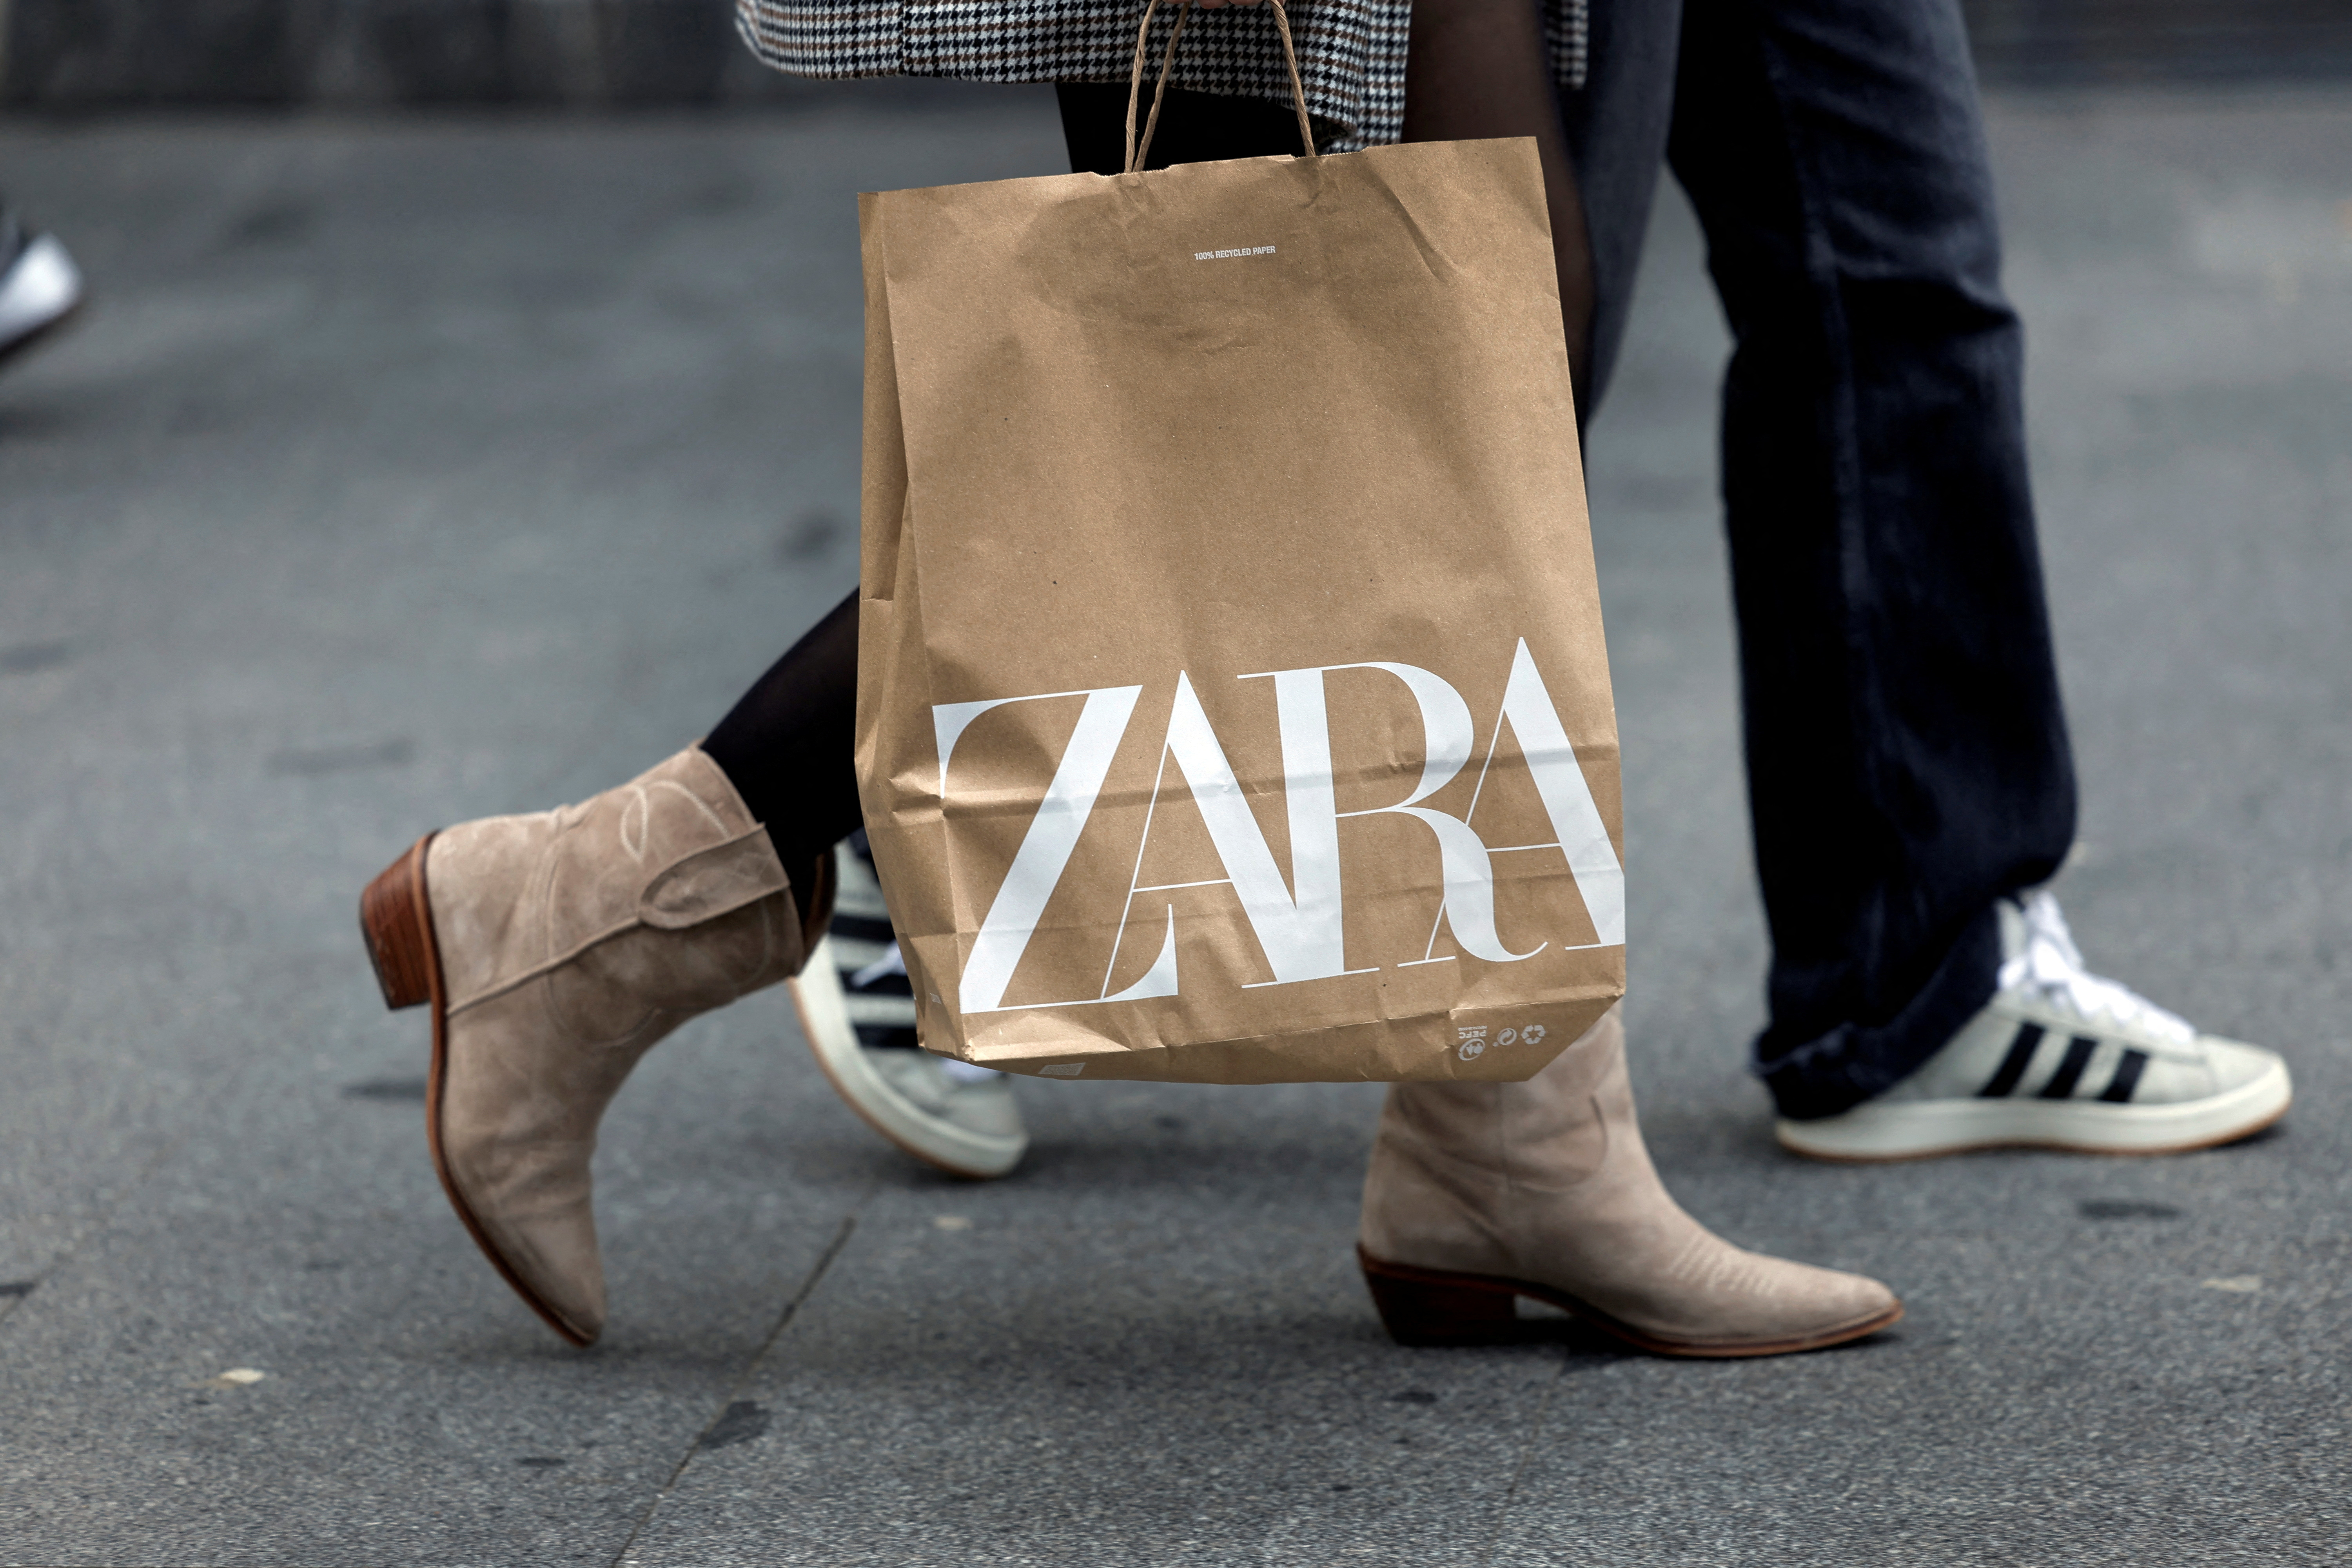 Zara-Eigentümer Inditex sagte, der Umsatz sei im vergangenen Jahr um 10,4 Prozent auf 30,7 Milliarden Pfund gestiegen